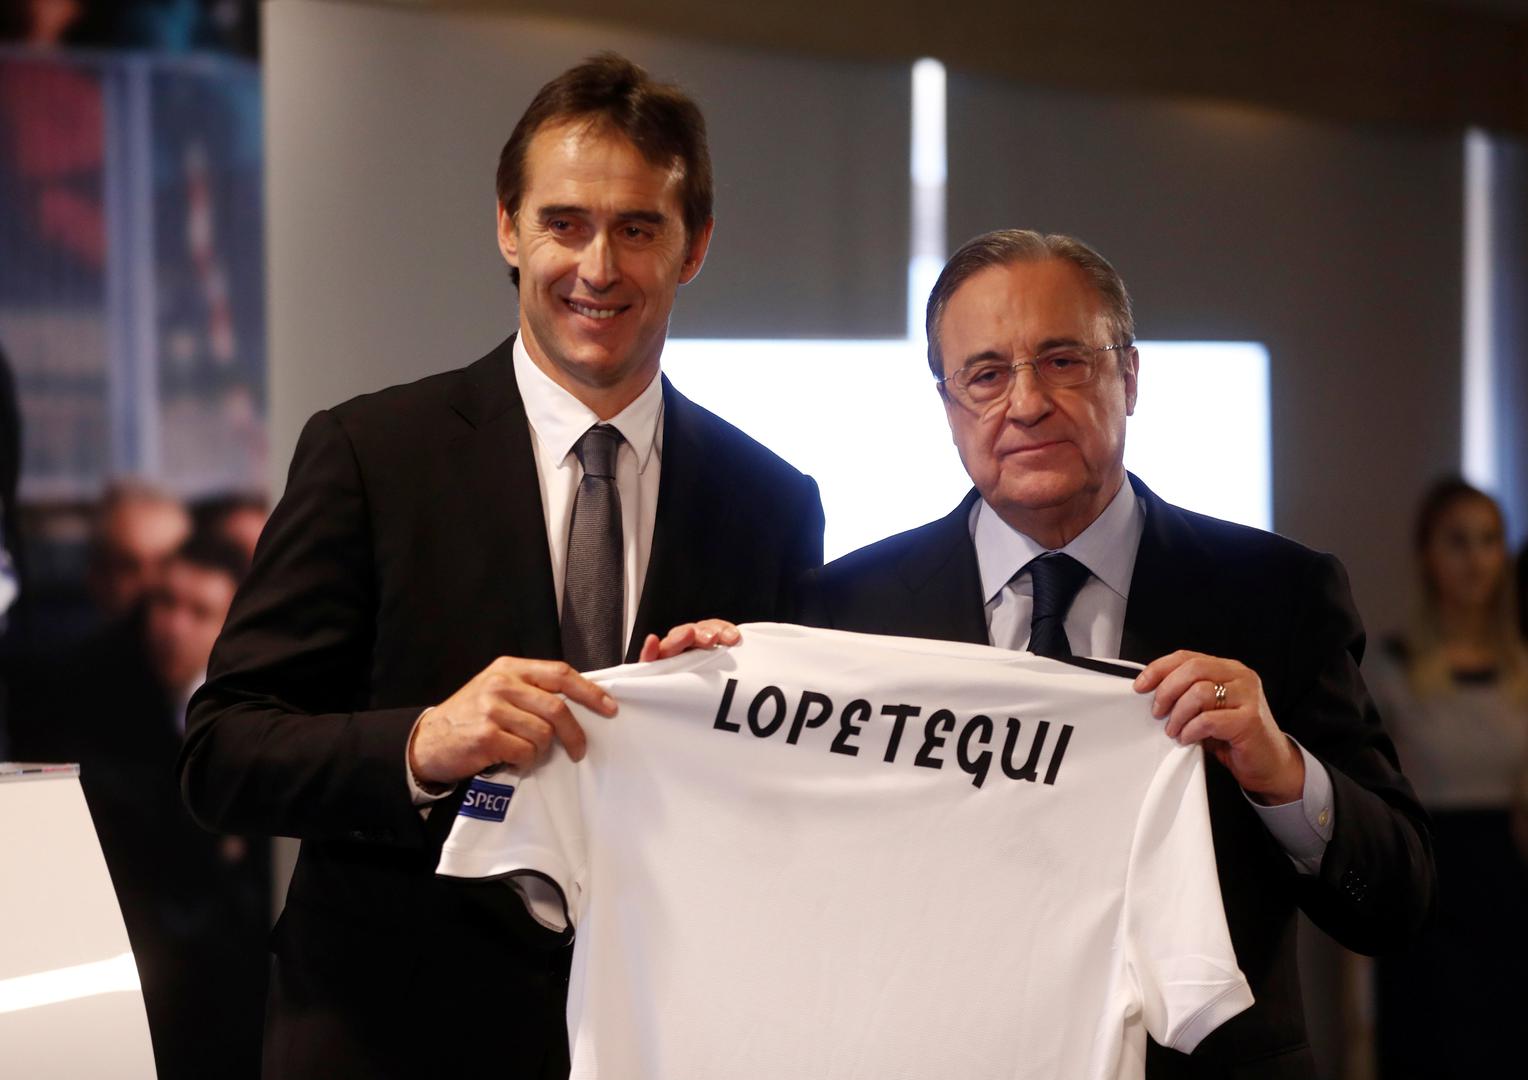 Lopetegui je istaknuo i da će gledati utakmicu protiv Portugala u petak.

